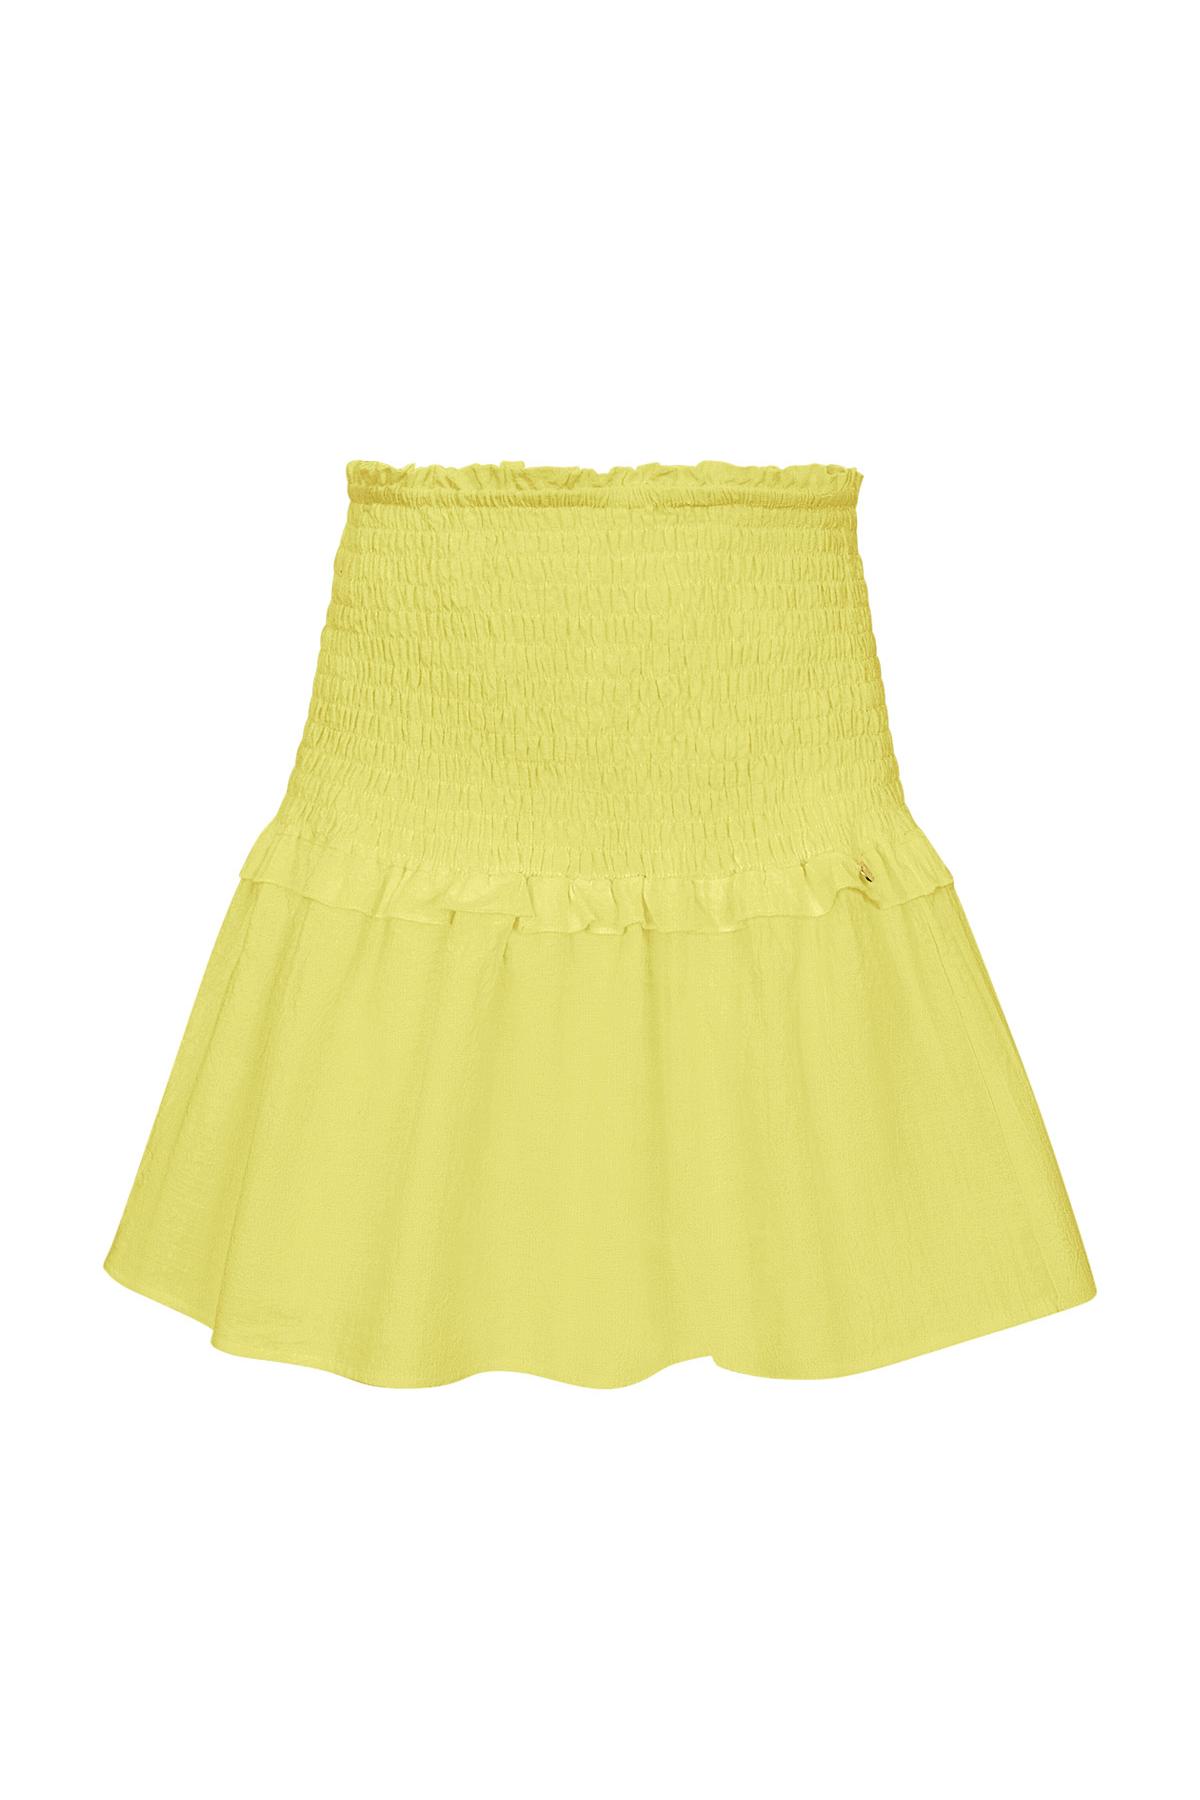 Skirt smock detail - yellow M h5 